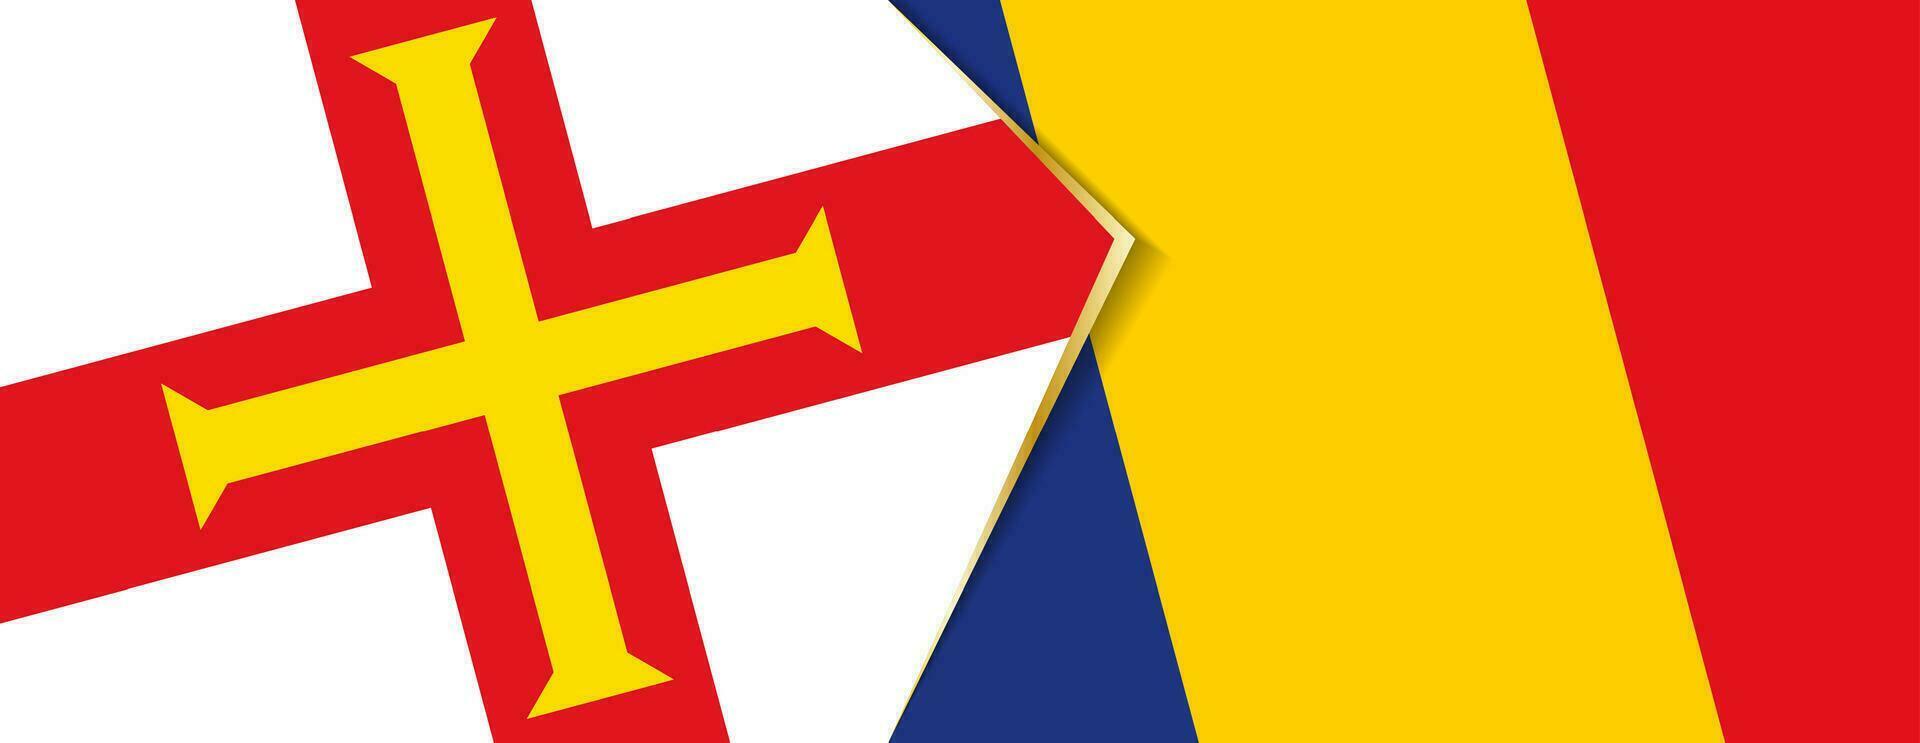 Guernesey et Roumanie drapeaux, deux vecteur drapeaux.